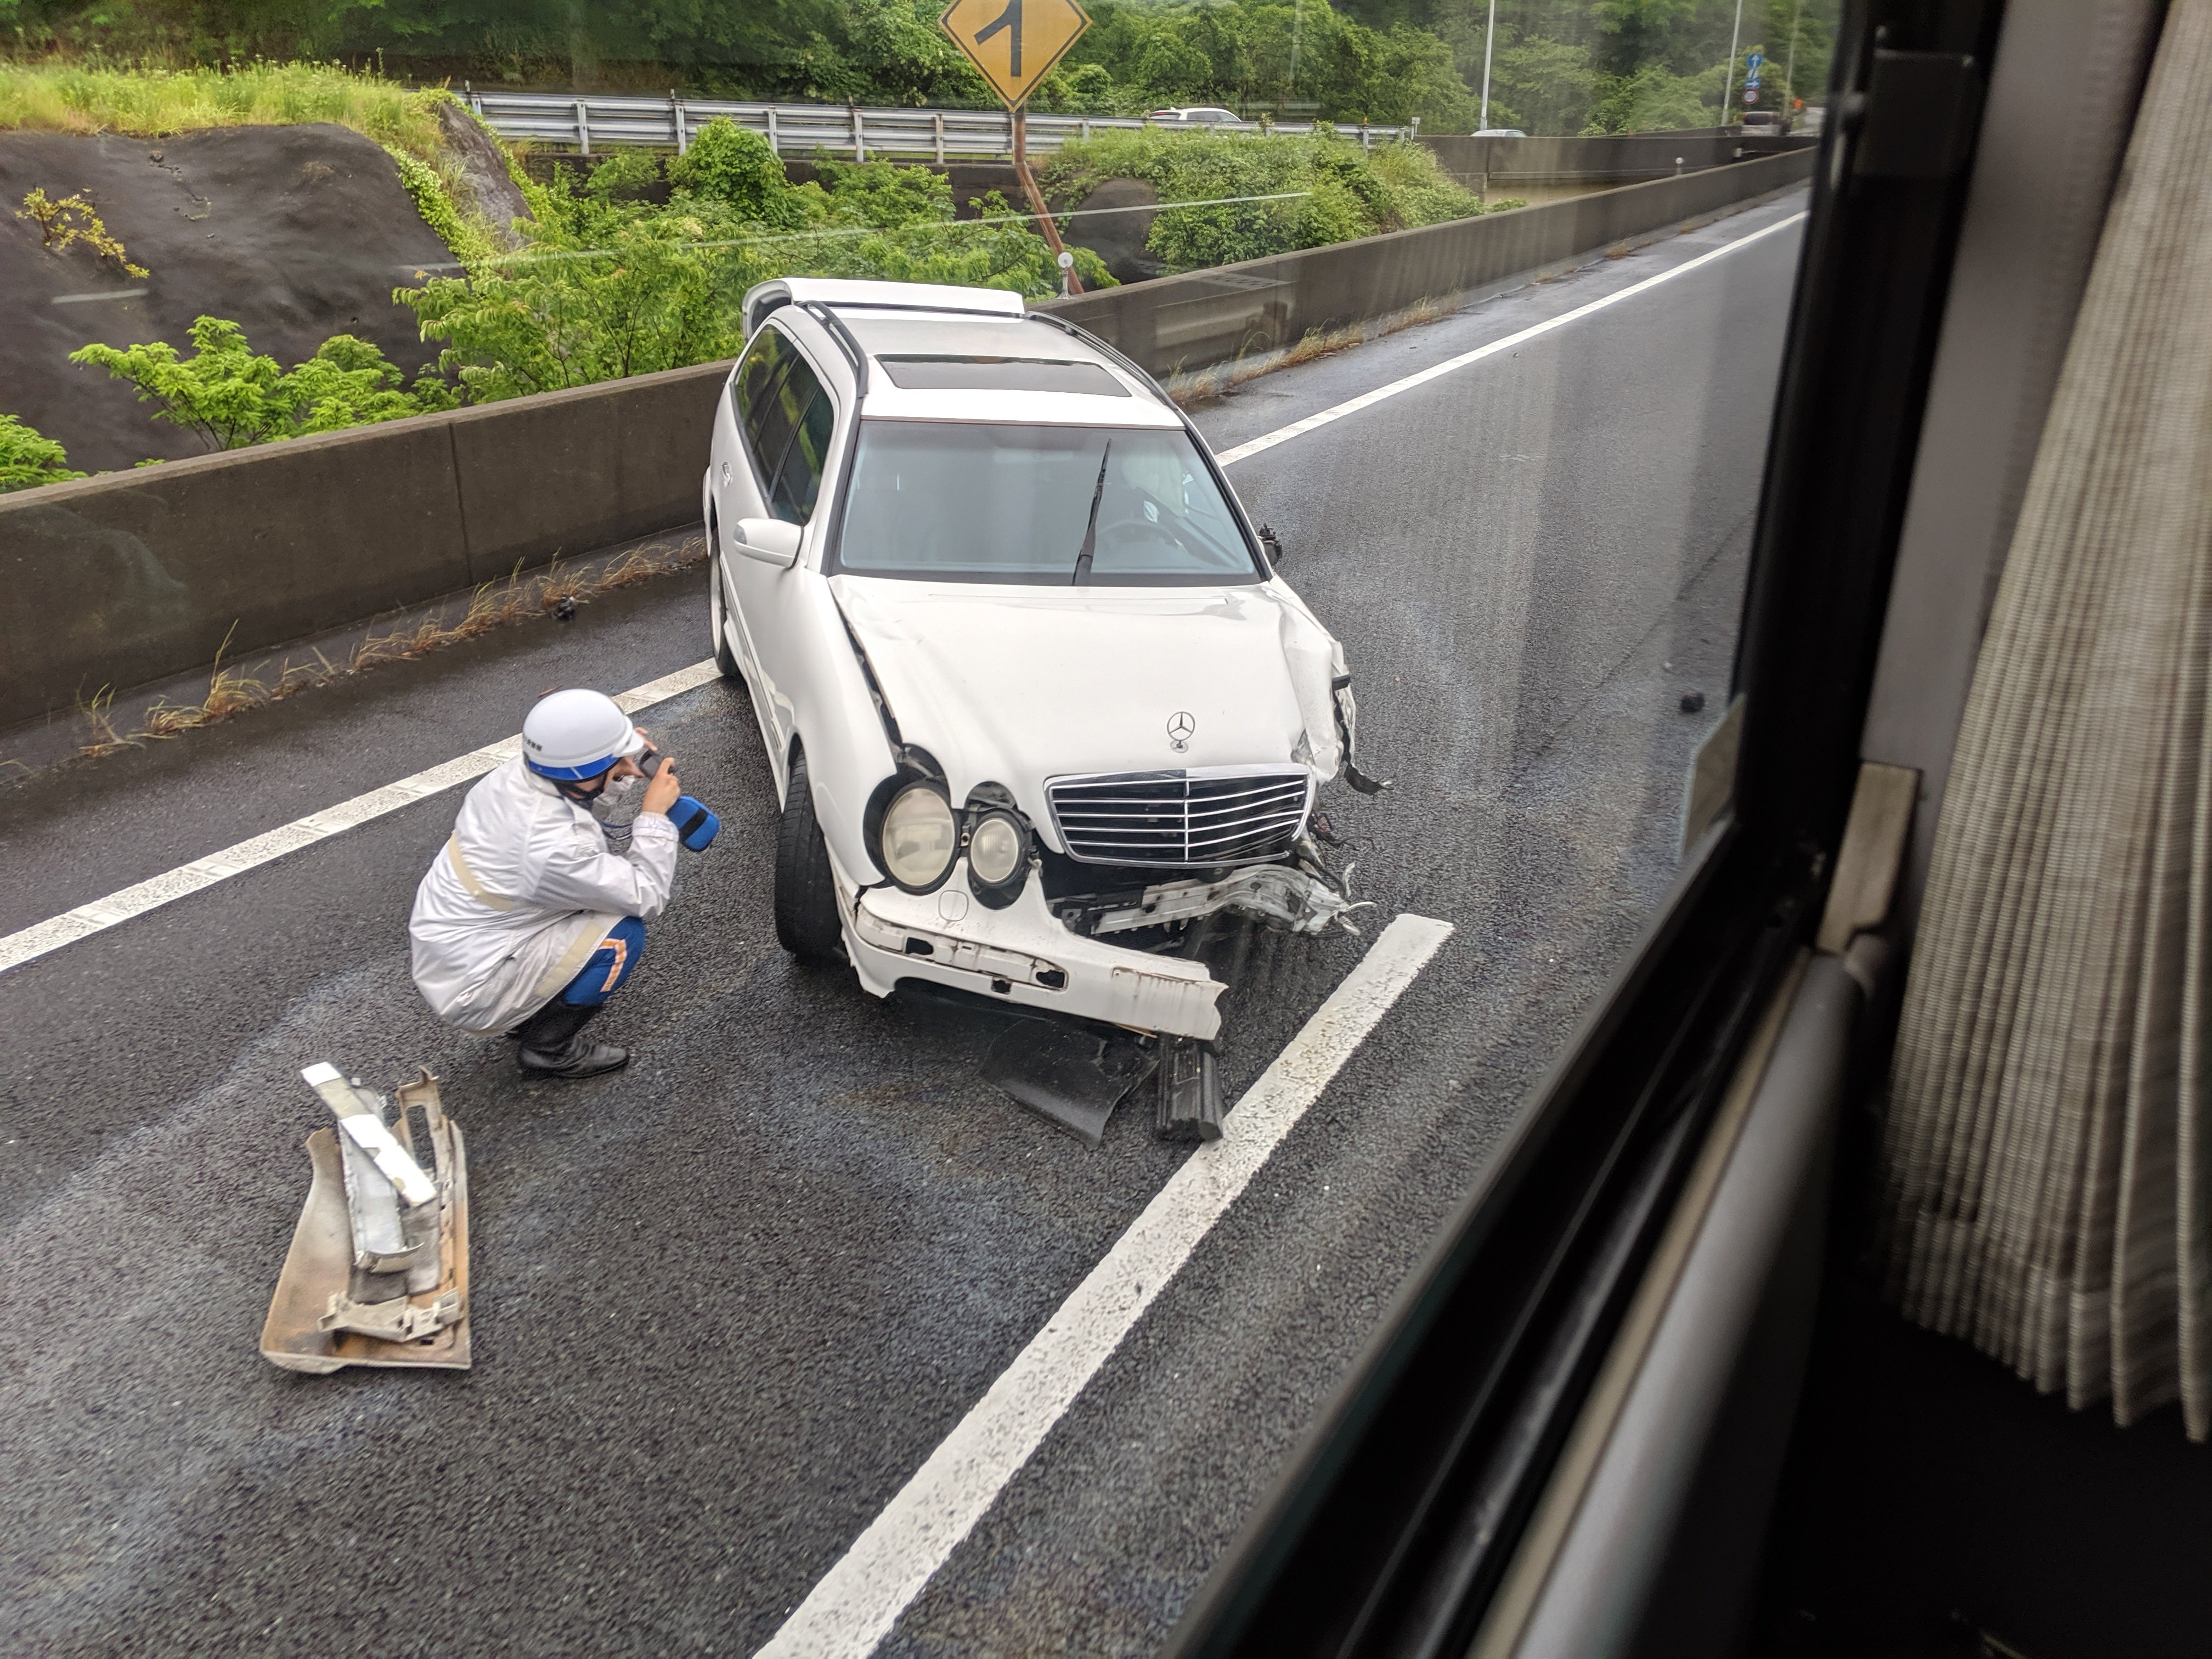 角田武範 横横道路 事故渋滞横須賀ｉｃで事故 自爆 怪我無さそう よかった 皆さん気をつけよう T Co f9yplagl Twitter